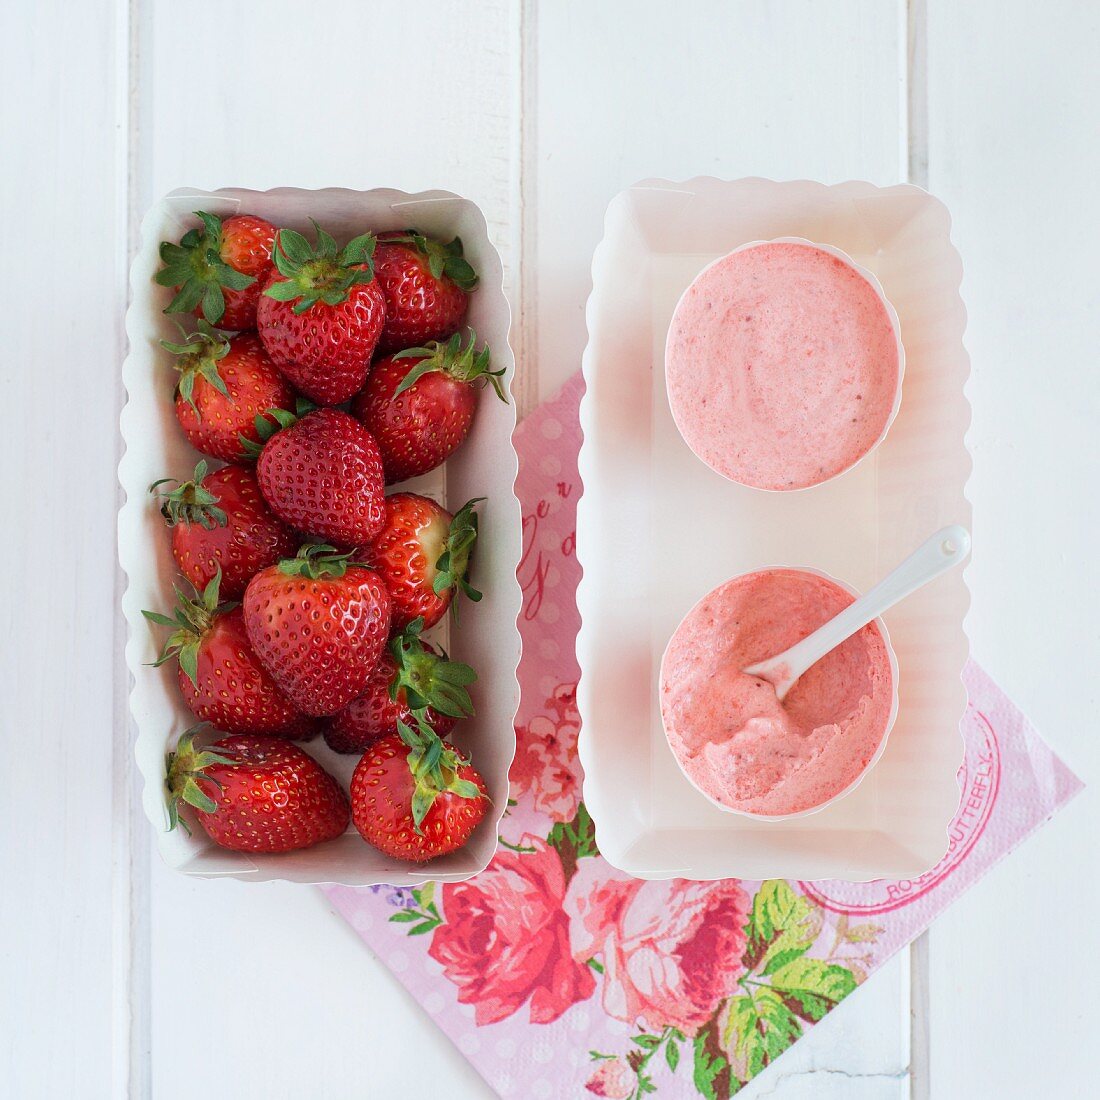 Erdbeermousse und frische Erdbeeren